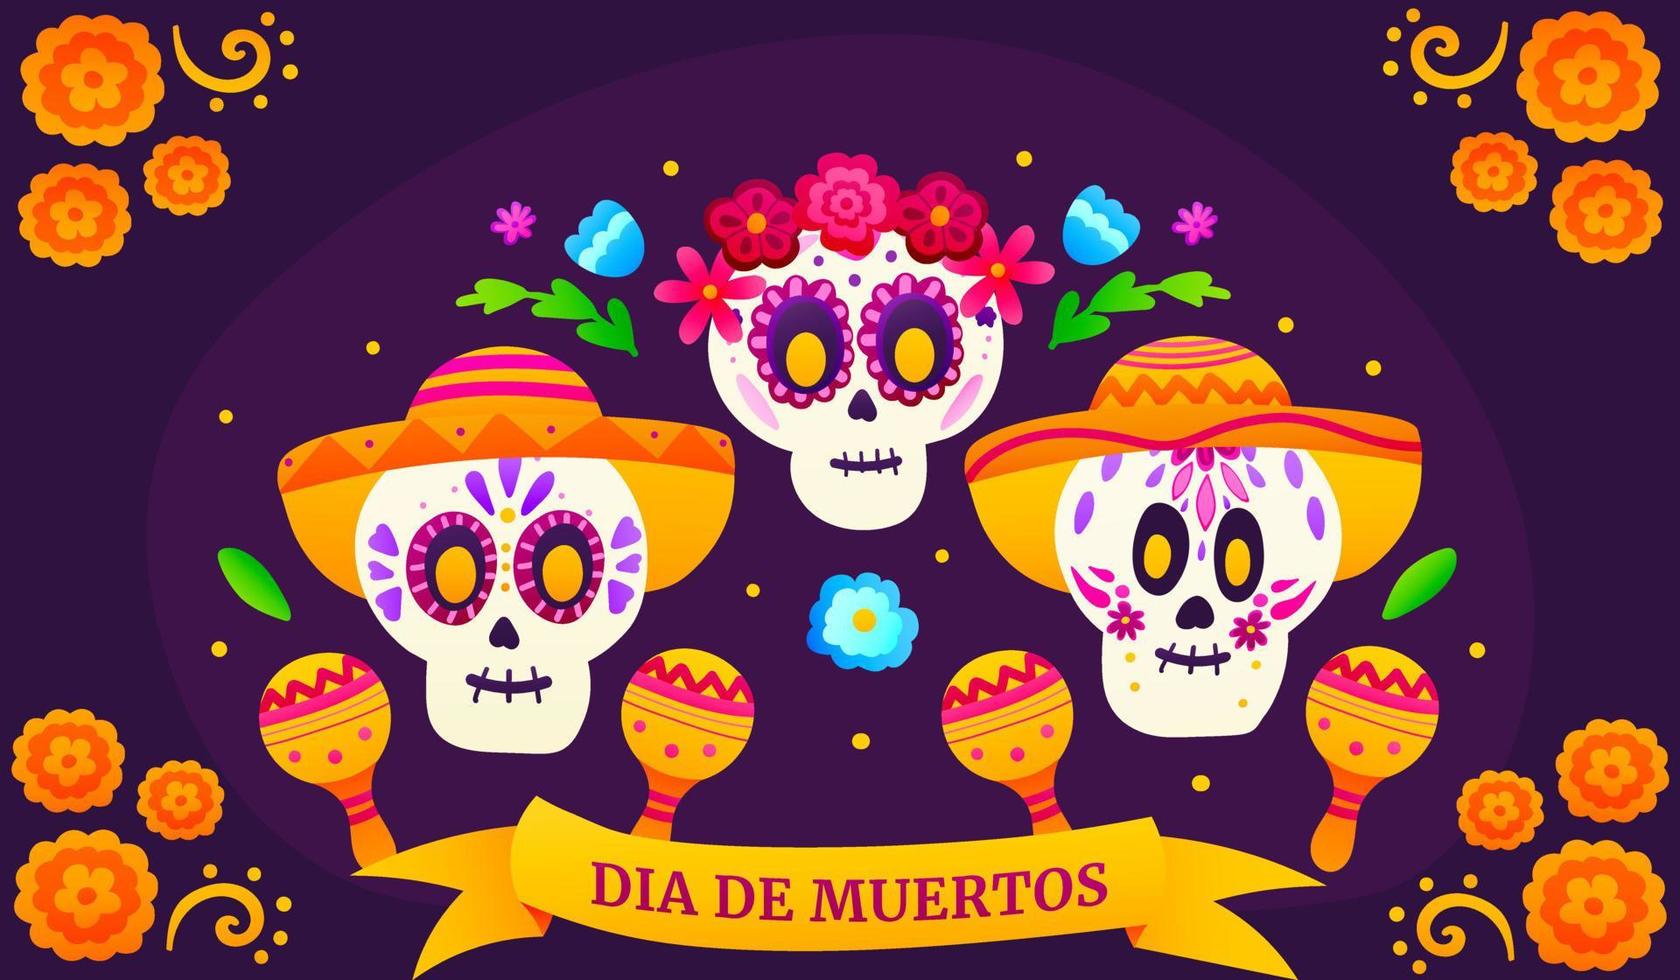 dia de los muertos banner de saudação com crânios de açúcar colorido e flores, dia mexicano dos mortos com esqueletos bonitos em estilo cartoon em fundo escuro com calêndulas, celebração do festival vetor